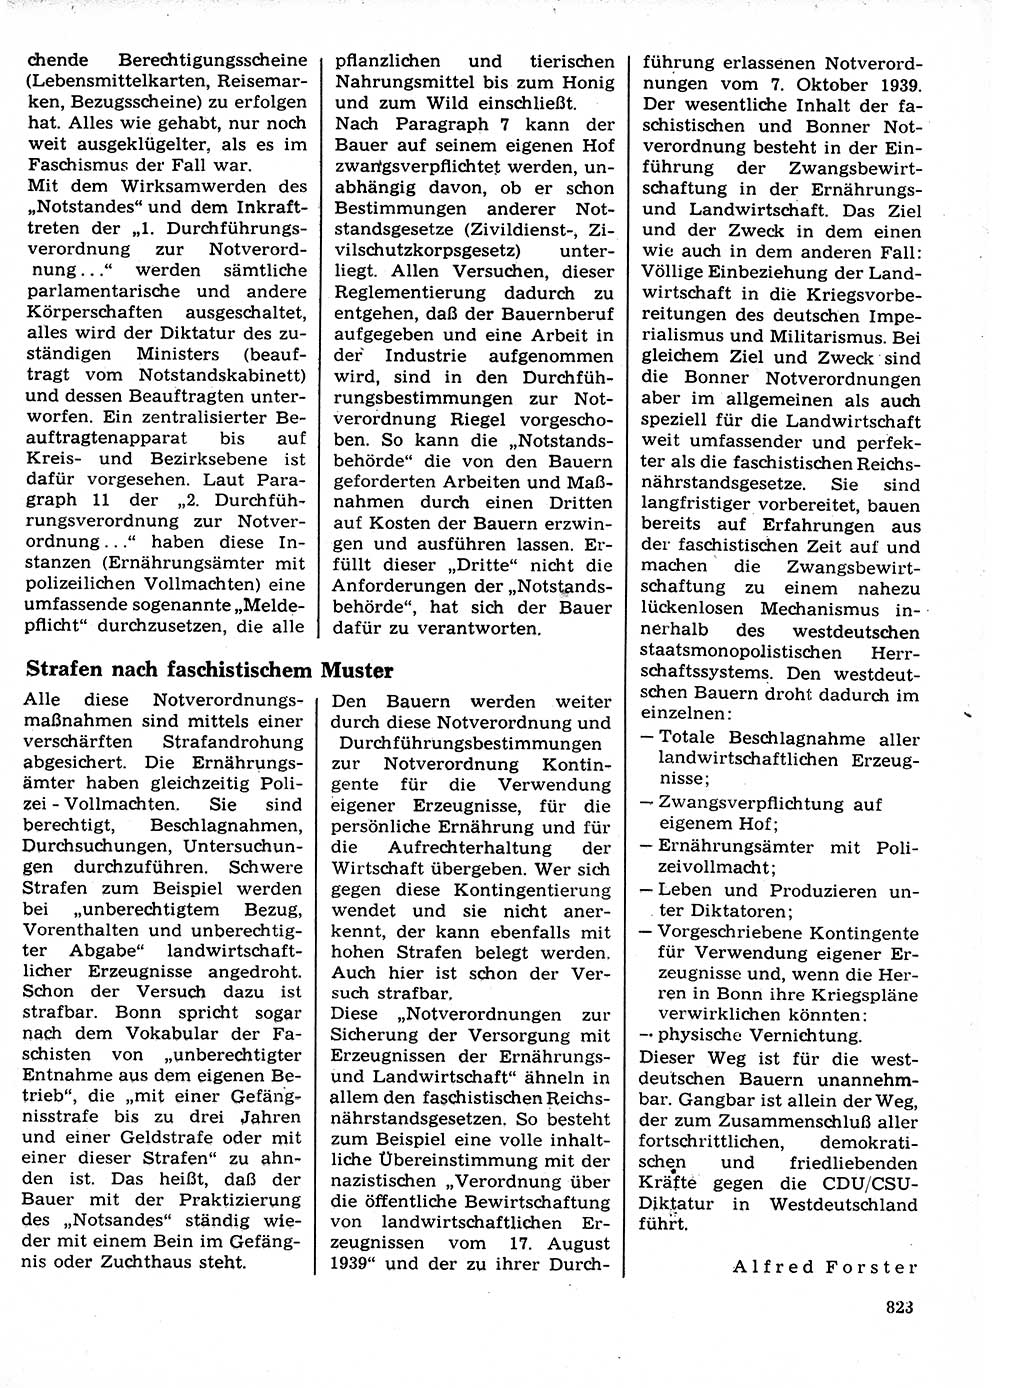 Neuer Weg (NW), Organ des Zentralkomitees (ZK) der SED (Sozialistische Einheitspartei Deutschlands) für Fragen des Parteilebens, 21. Jahrgang [Deutsche Demokratische Republik (DDR)] 1966, Seite 823 (NW ZK SED DDR 1966, S. 823)